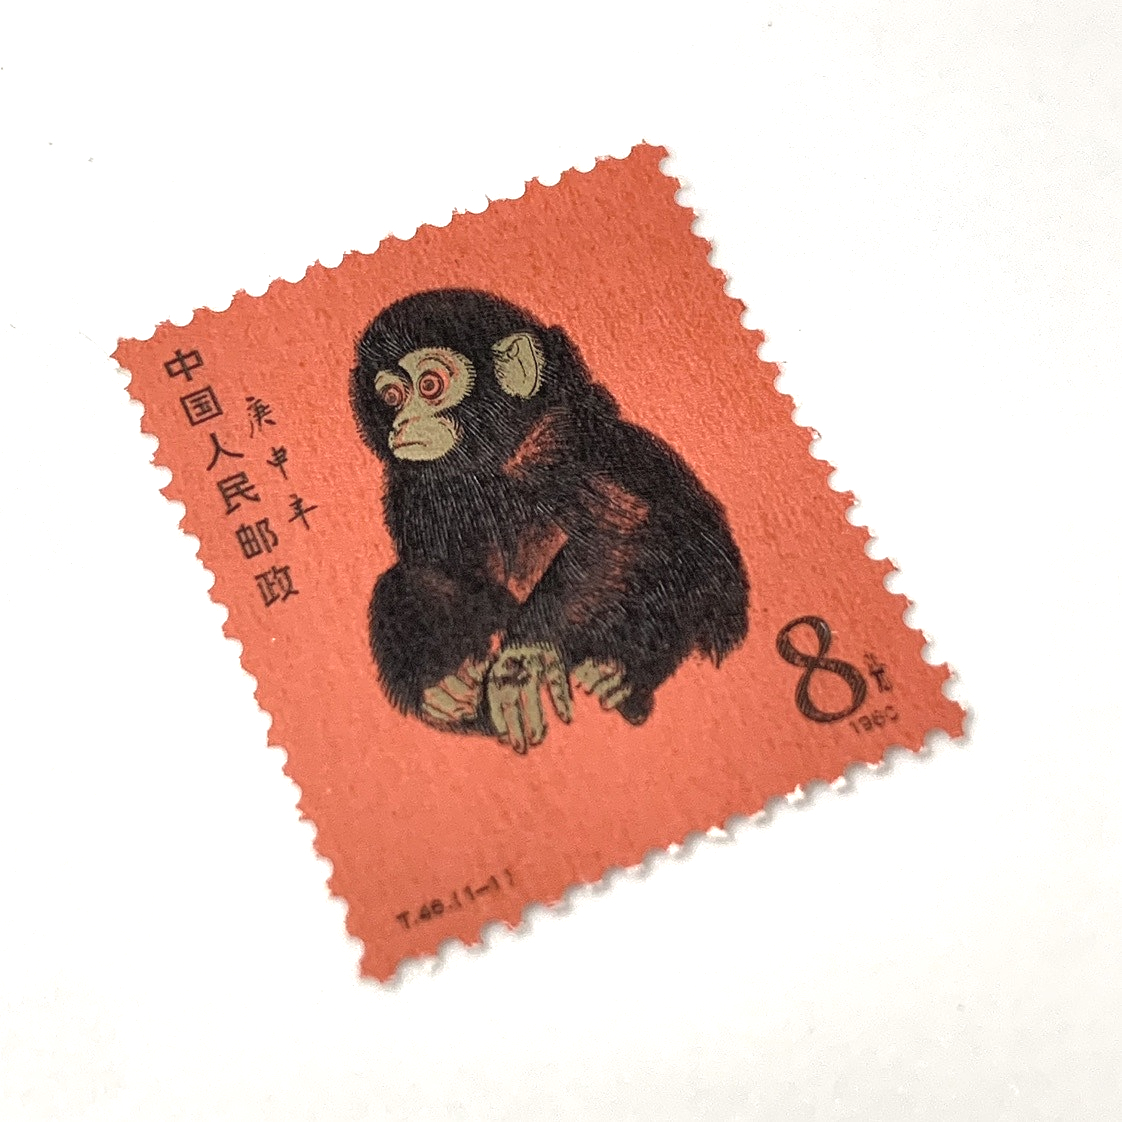 中国切手 中國郵票 - 使用済切手/官製はがき